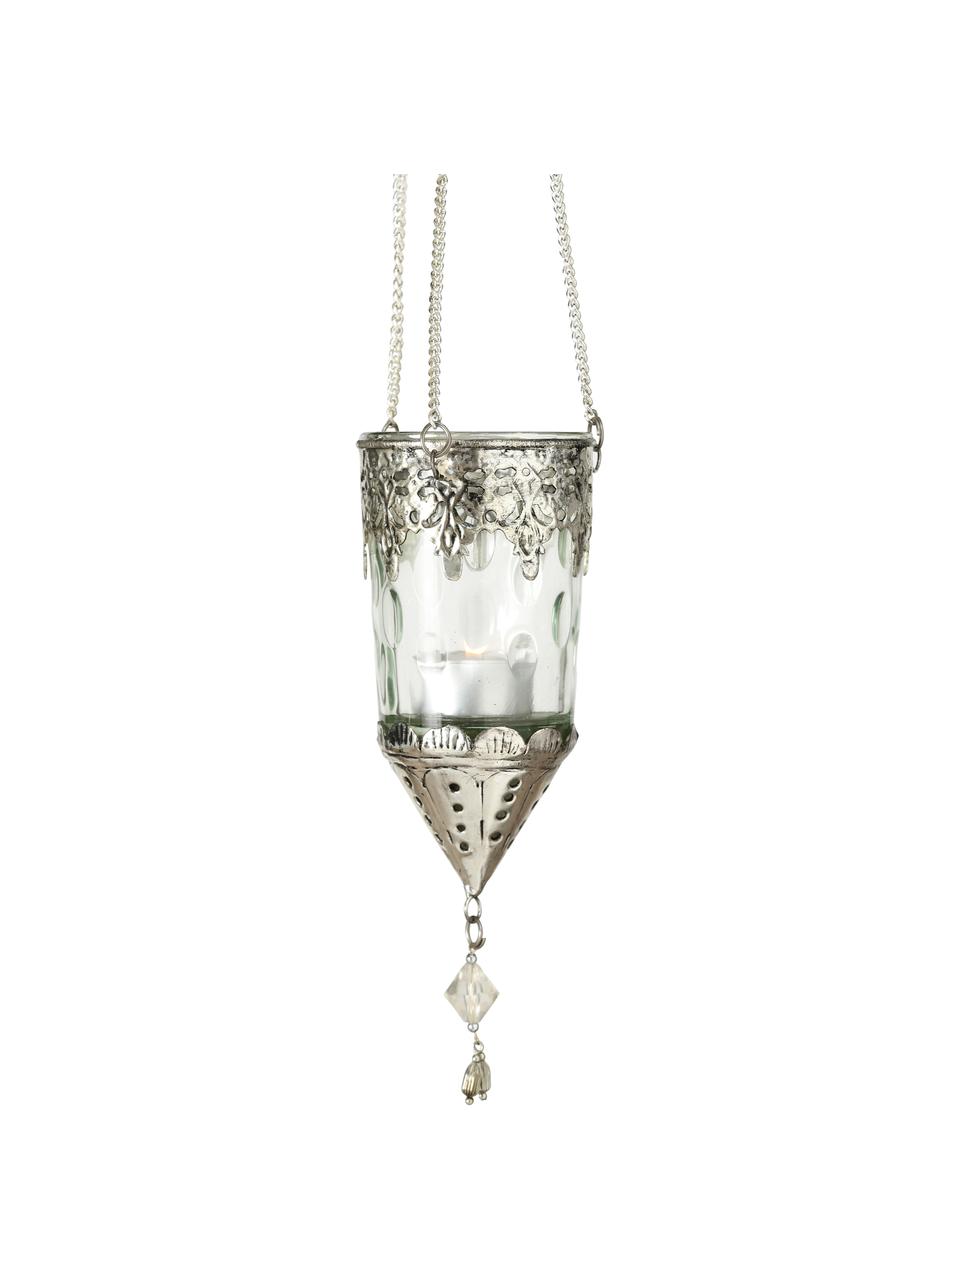 Windlichter-Set Cosa aus Glas, 3-tlg., Windlicht: Glas, Dekor: Metall, Transparent, Silberfarben, Ø 9 x H 23 cm